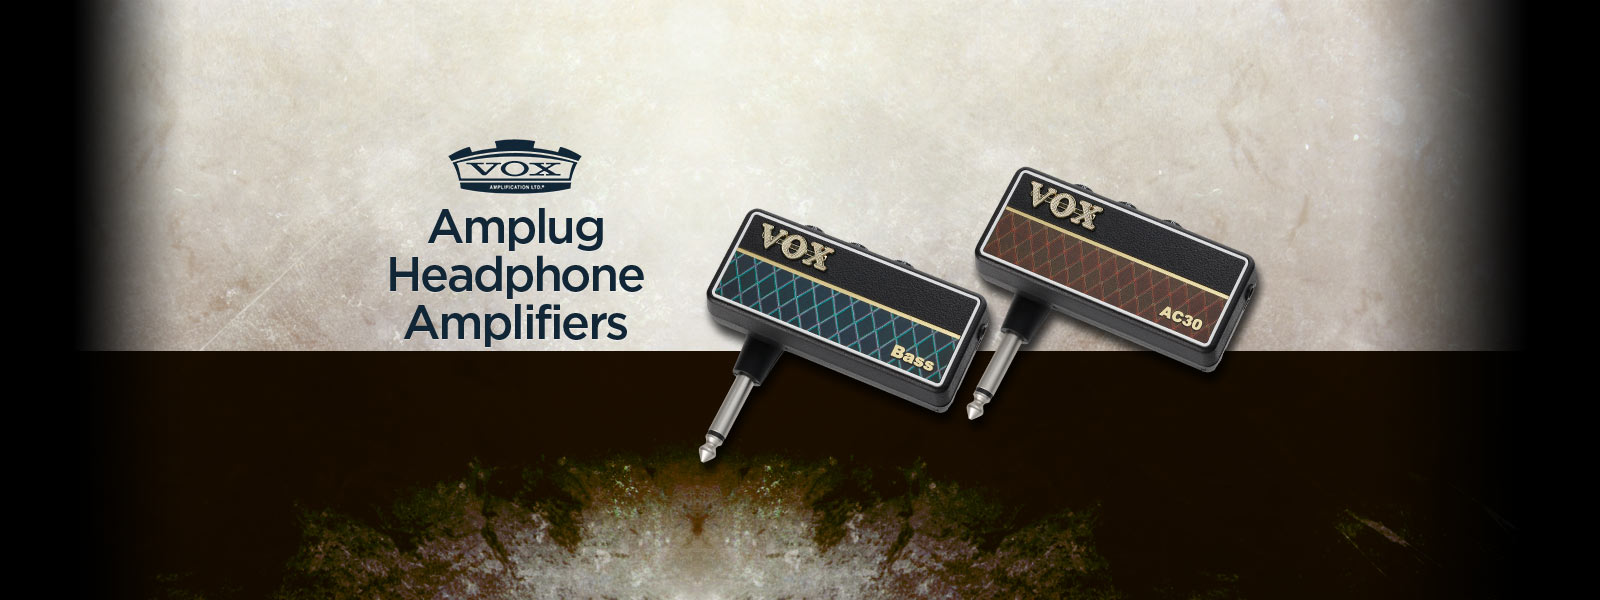 VOX Amplug Headphone Series Amplifiers